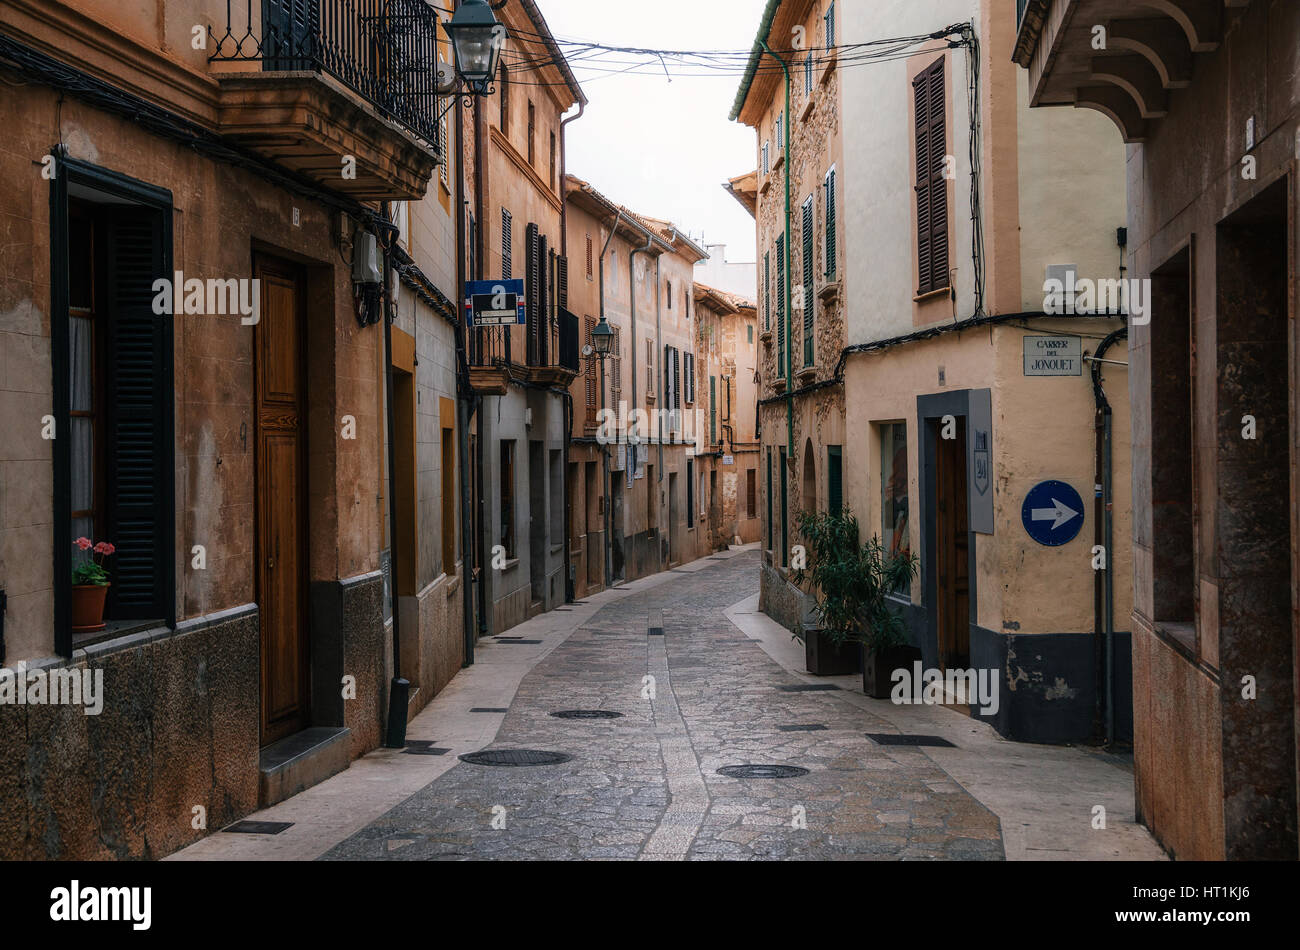 Rues étroites et sinueuses, dans la partie historique de la ville de Pollensa avec ses maisons traditionnelles en pierre, Mallorca, Espagne Banque D'Images